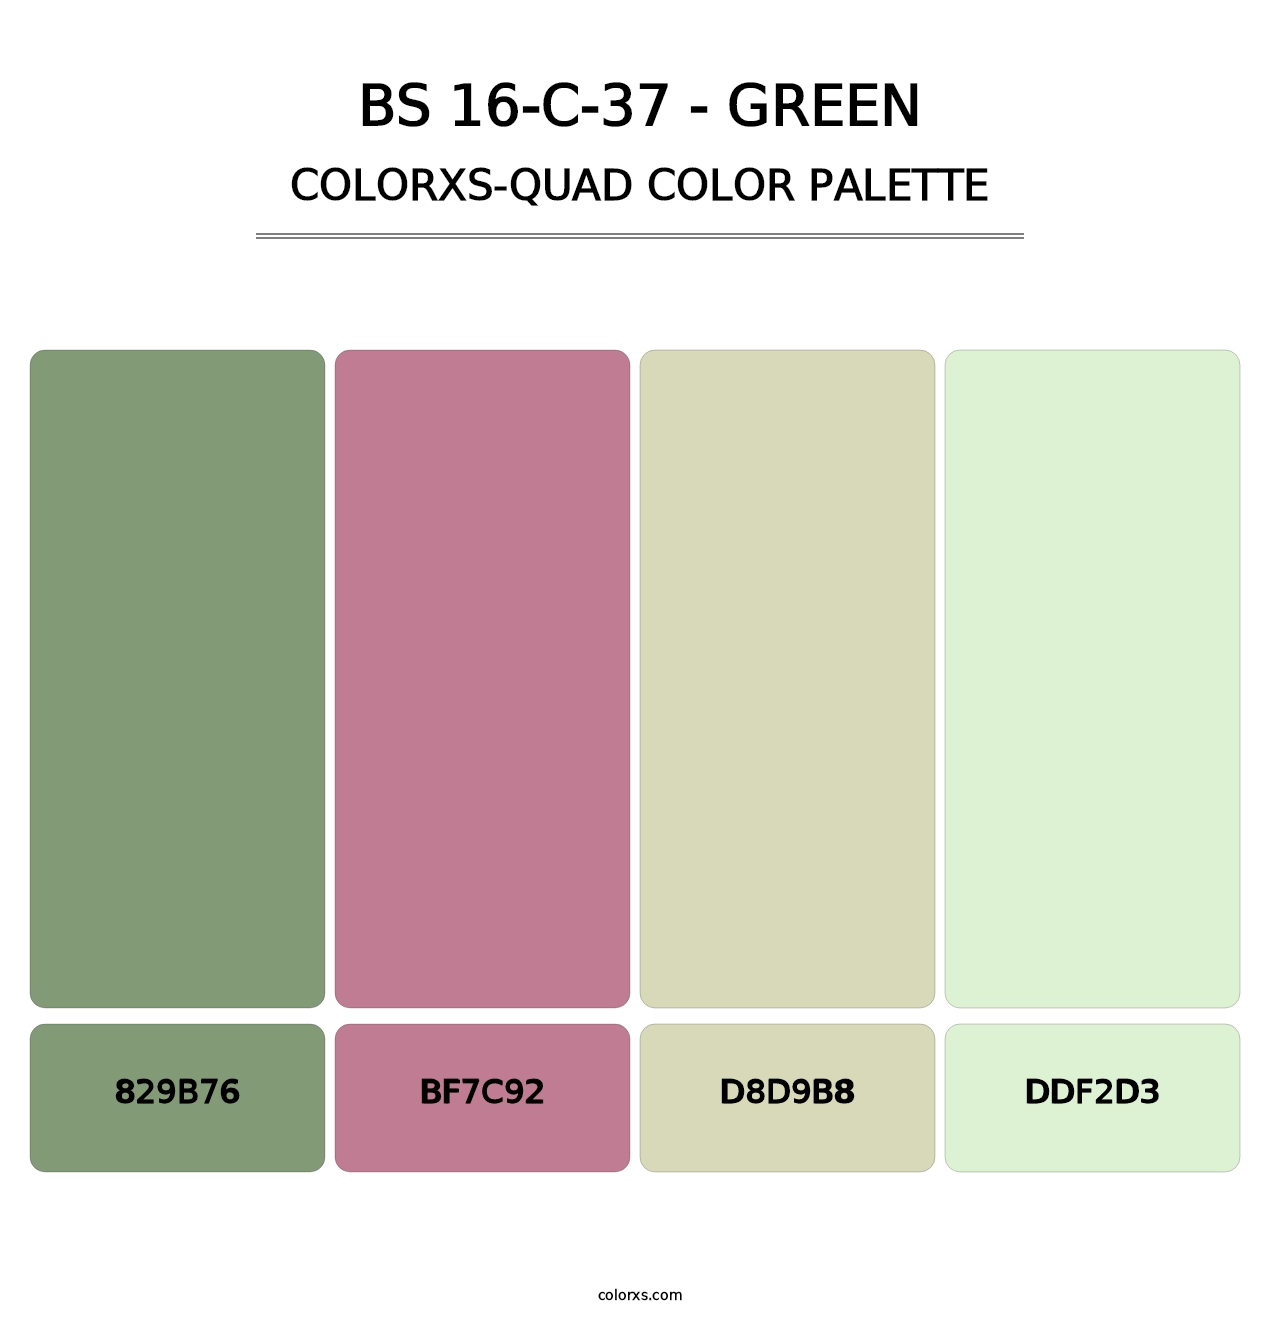 BS 16-C-37 - Green - Colorxs Quad Palette